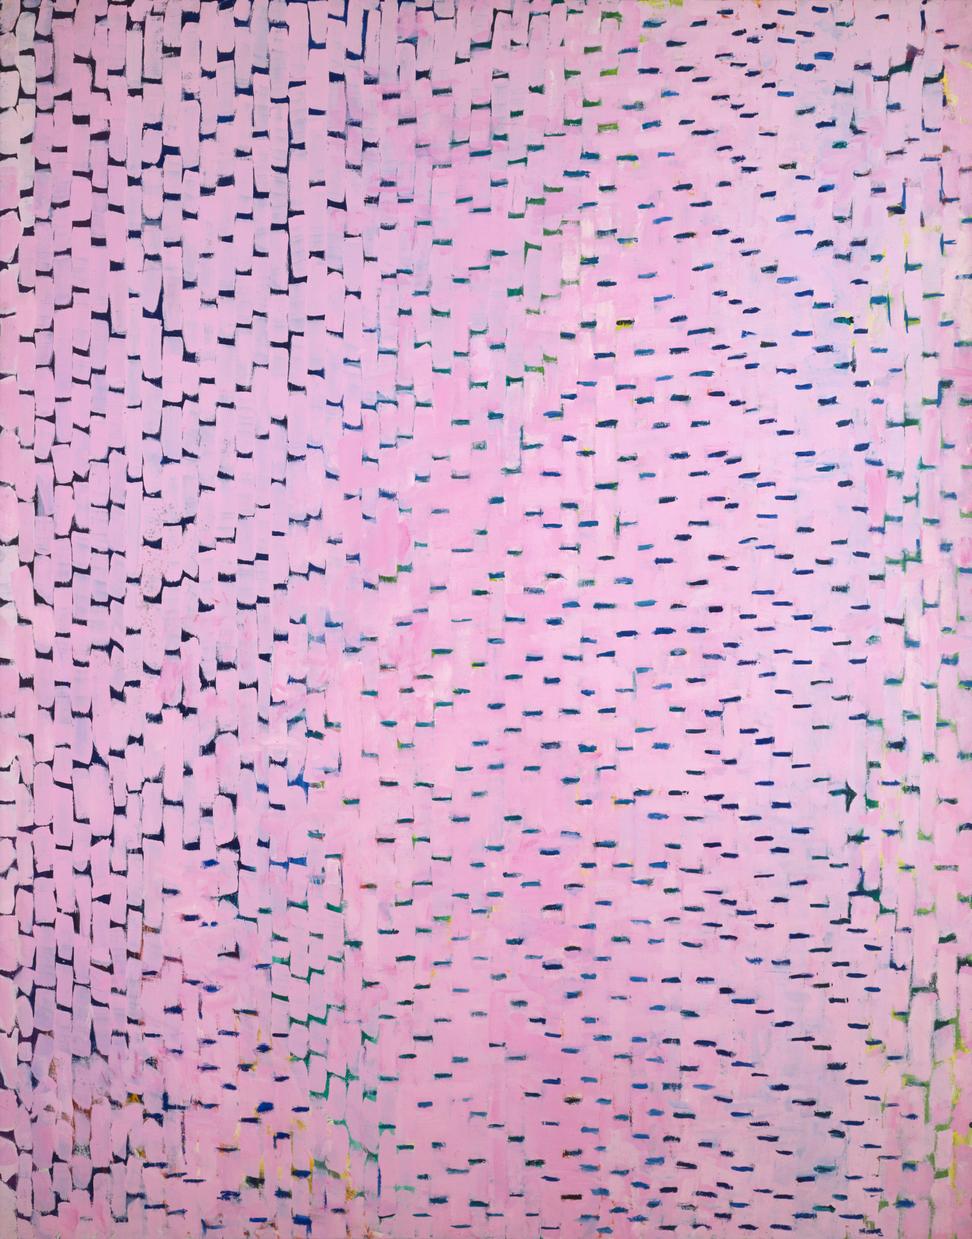 Alma Thomas, Cherry Blossom Symphony, 1973, acrylic on canvas, 69 x 54 inches